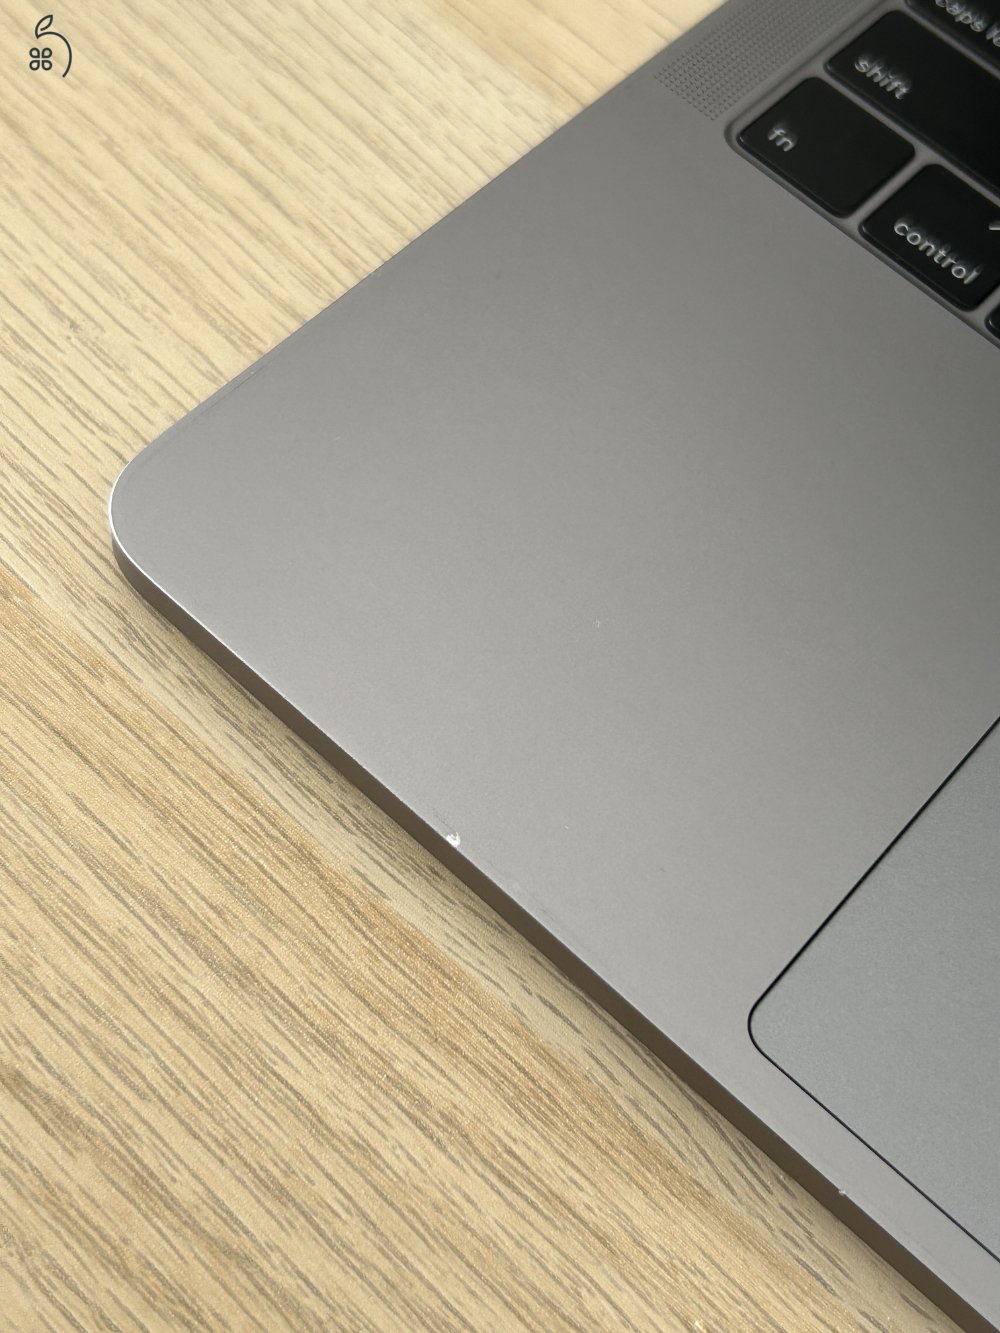 Eladó Apple MacBook Pro 13” Retina Touch Bar (2018-as modell) - 256 GB - Asztroszürke